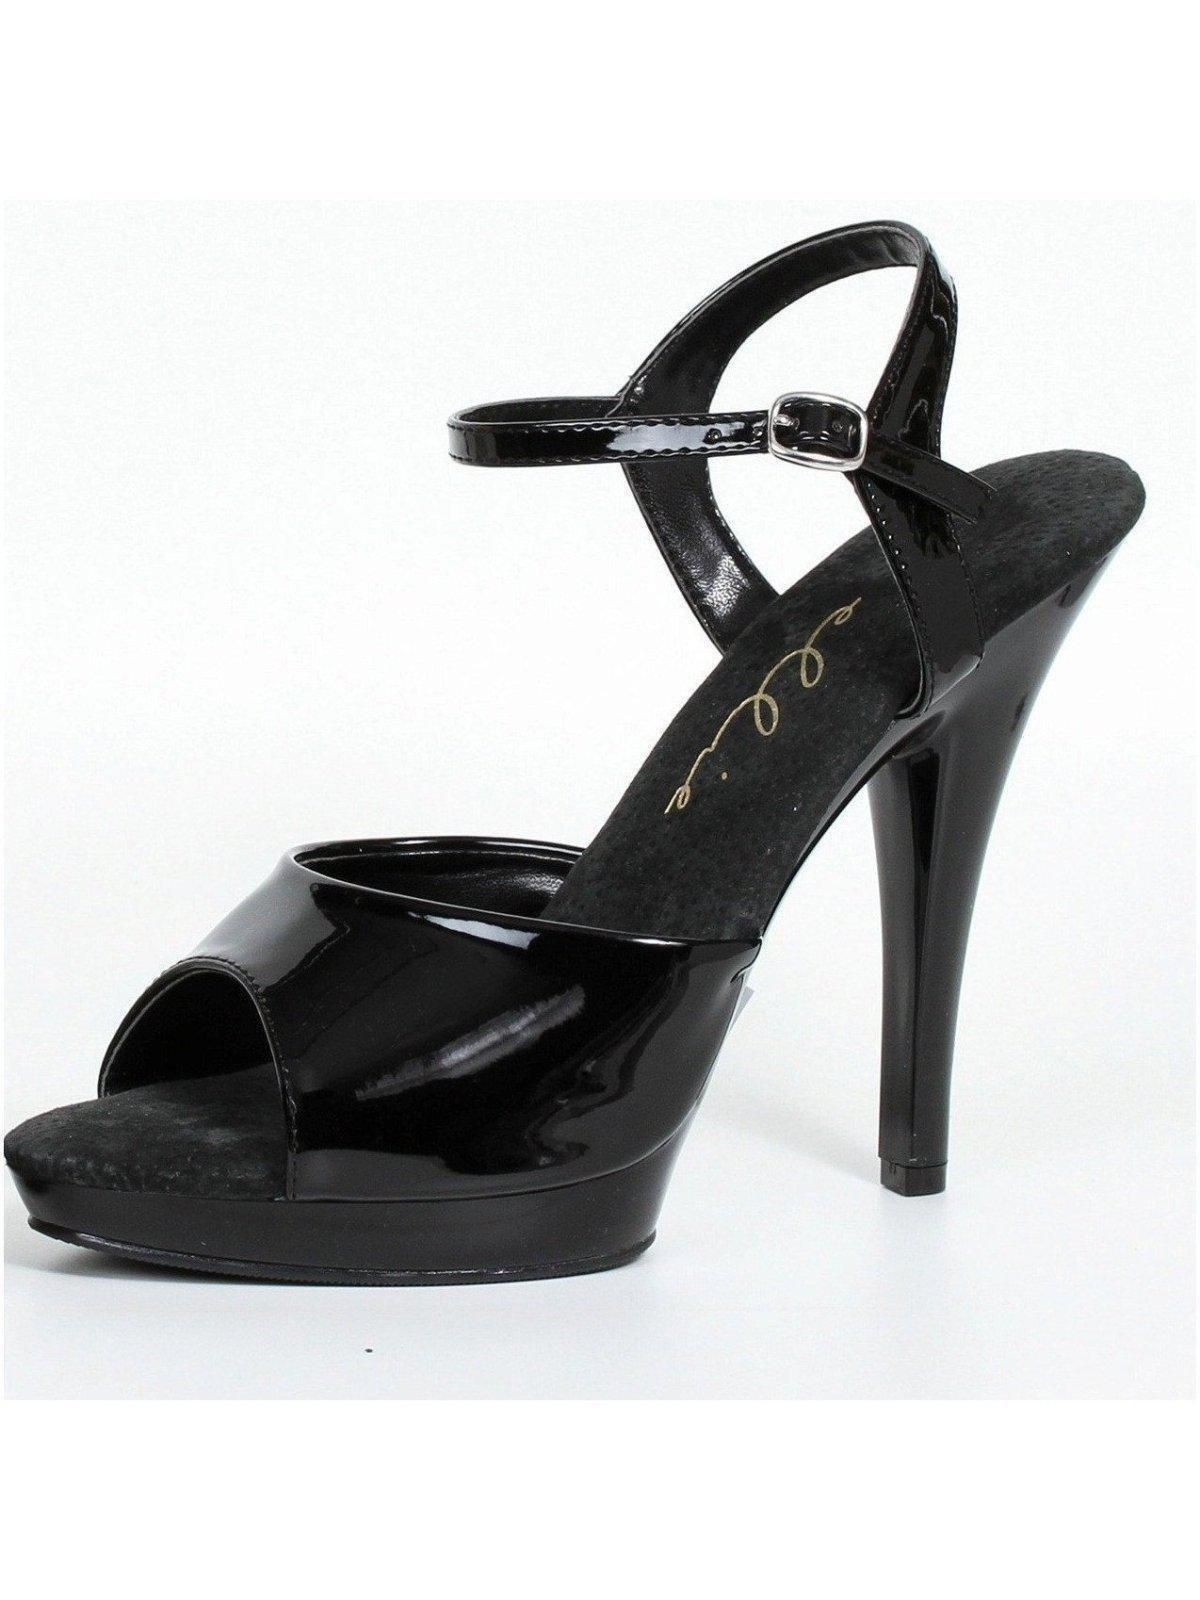 Ellie Shoes E-521-Juliet-W 5" Heel Womens WIDE Width Sandal. Nude / 12 - image 1 of 2